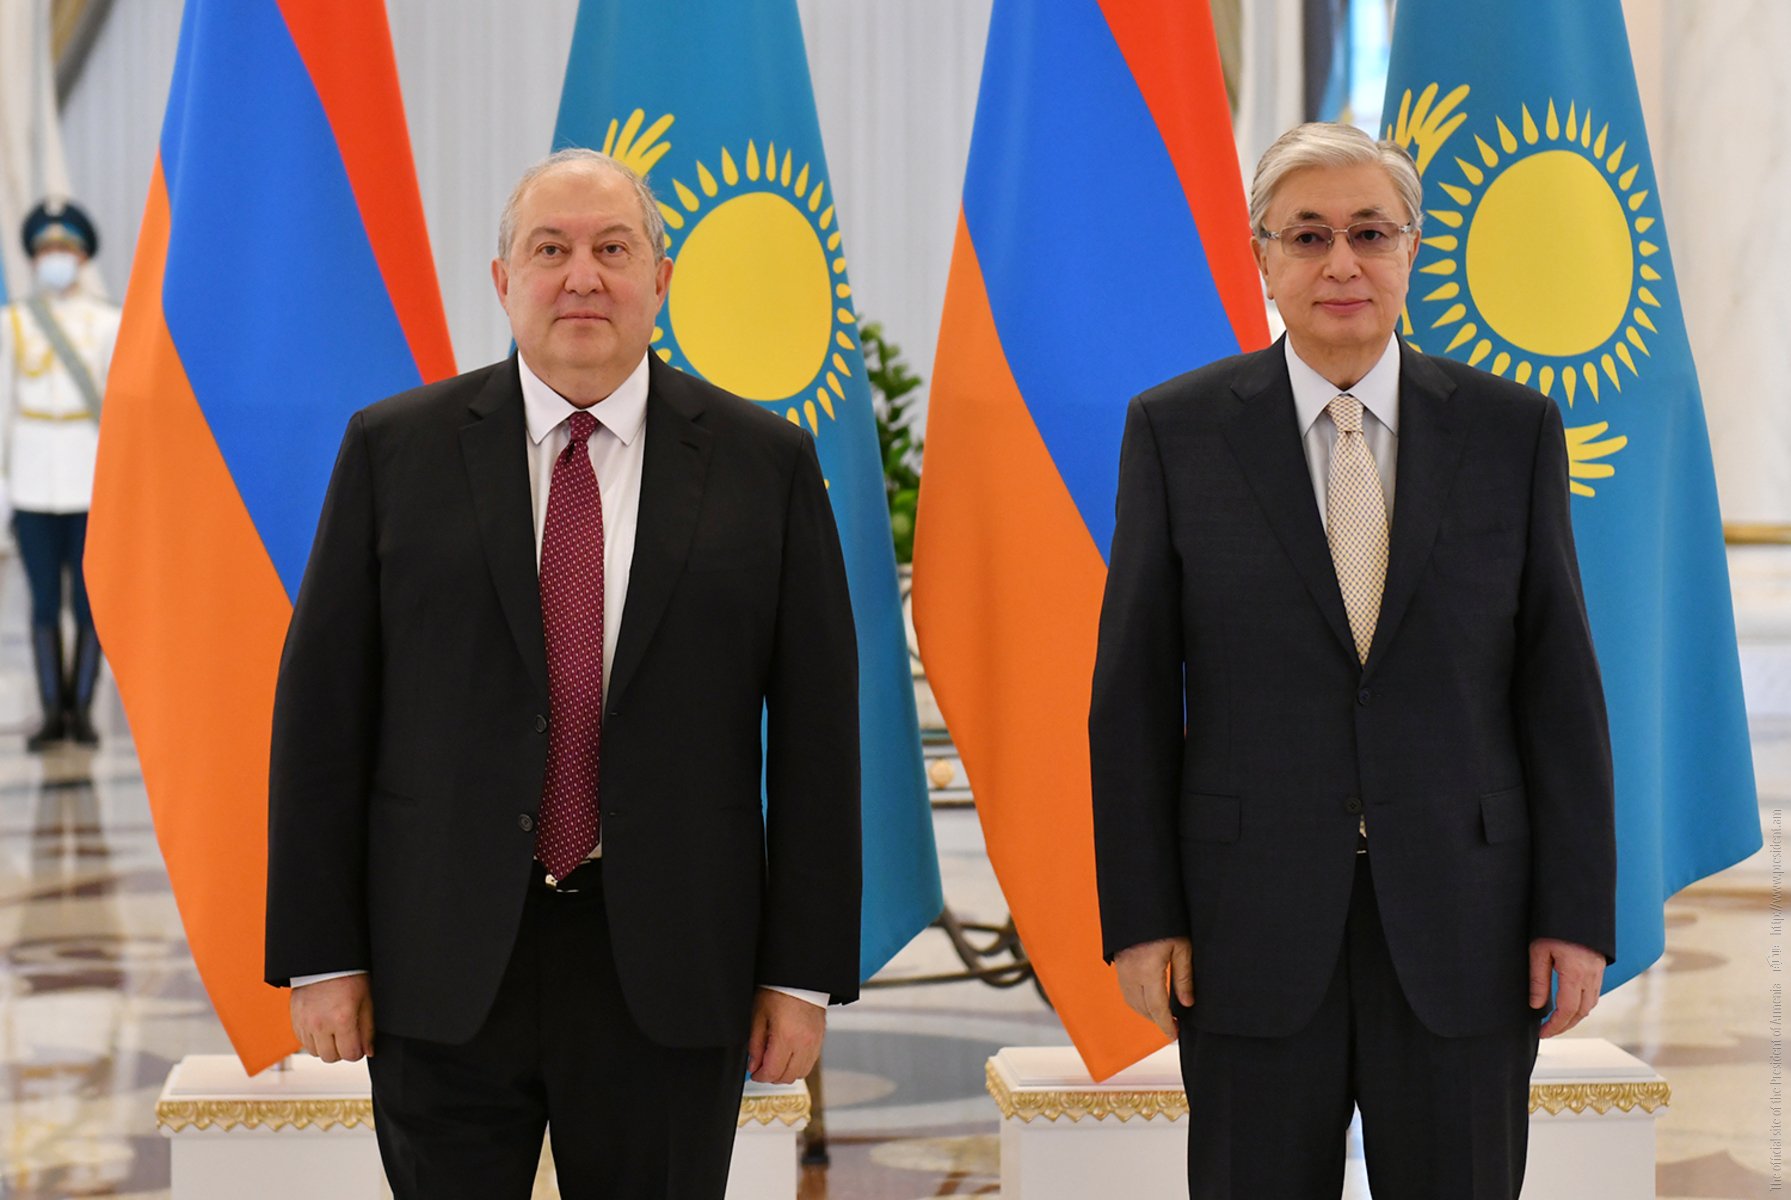 Նուր-Սուլթանում տեղի է ունեցել Հայաստանի և Ղազախստանի նախագահների հանդիպումը